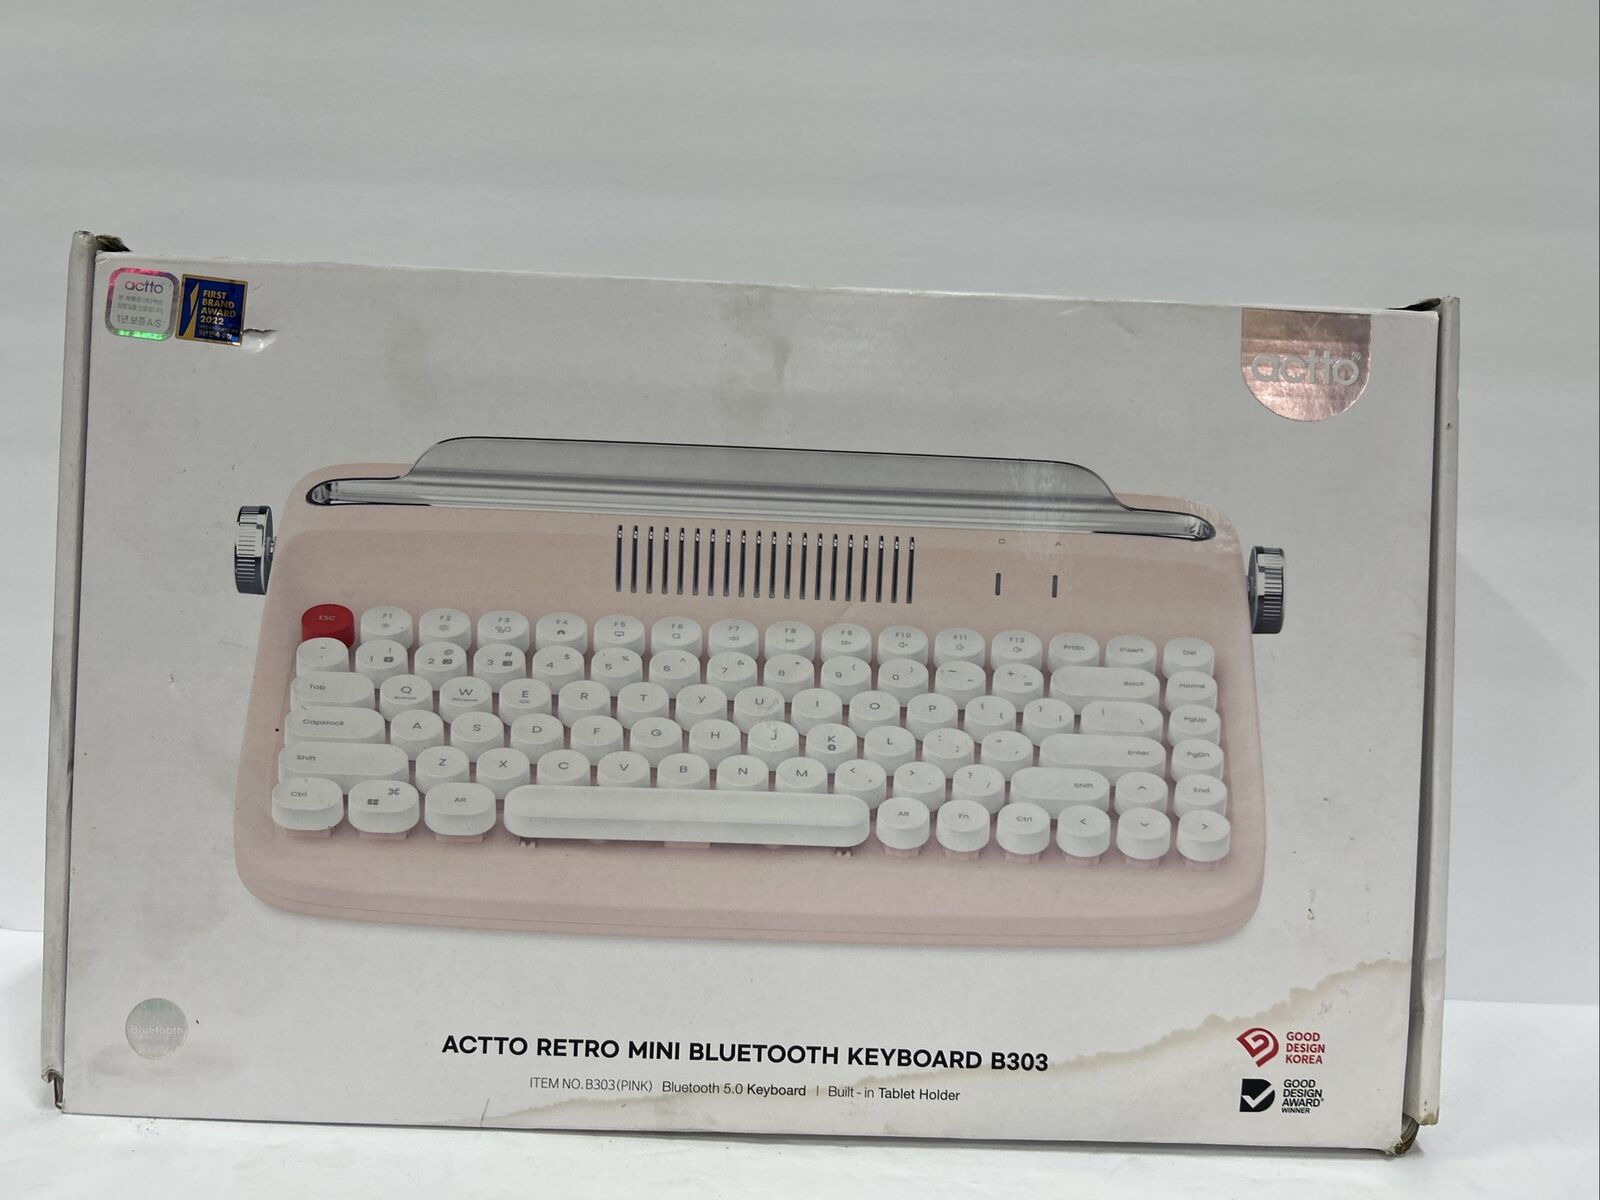 Actto Retro Mini Bluetooth Typewriter Keyboard B303 - Pink